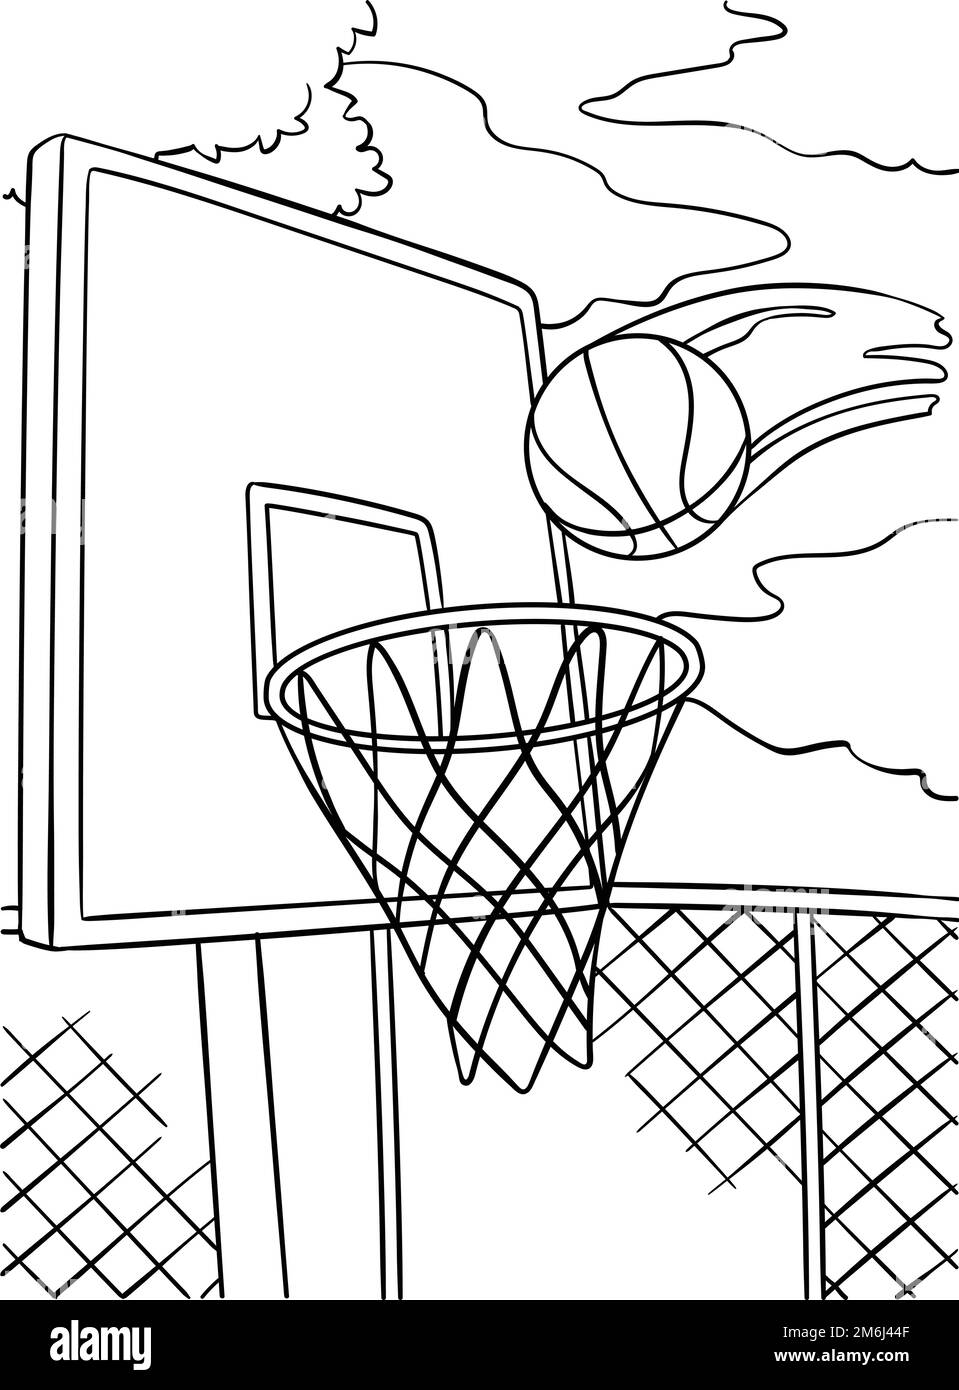 Aro de baloncesto y pelota Imágenes de stock en blanco y negro - Alamy